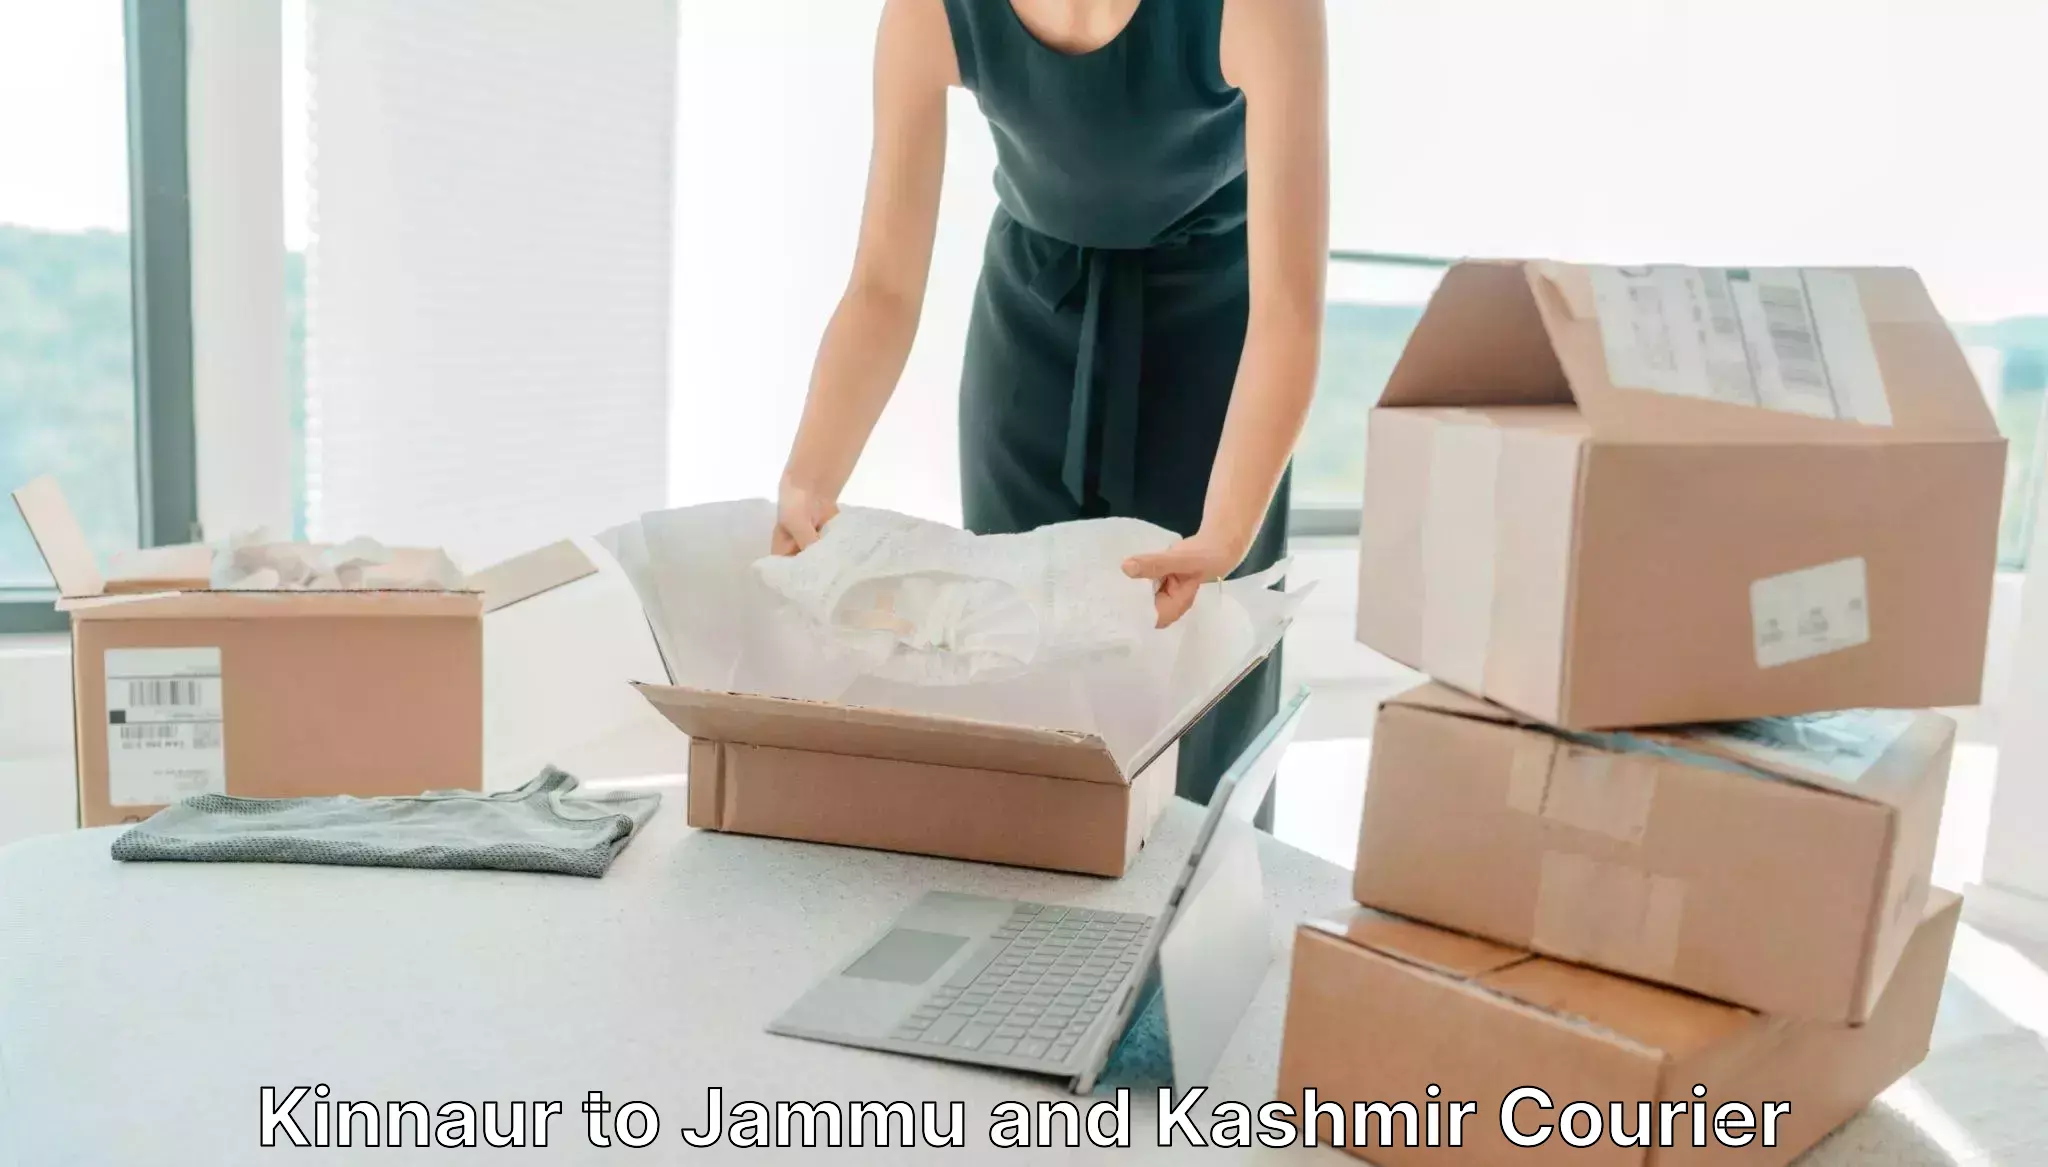 Multi-national courier services Kinnaur to Hiranagar